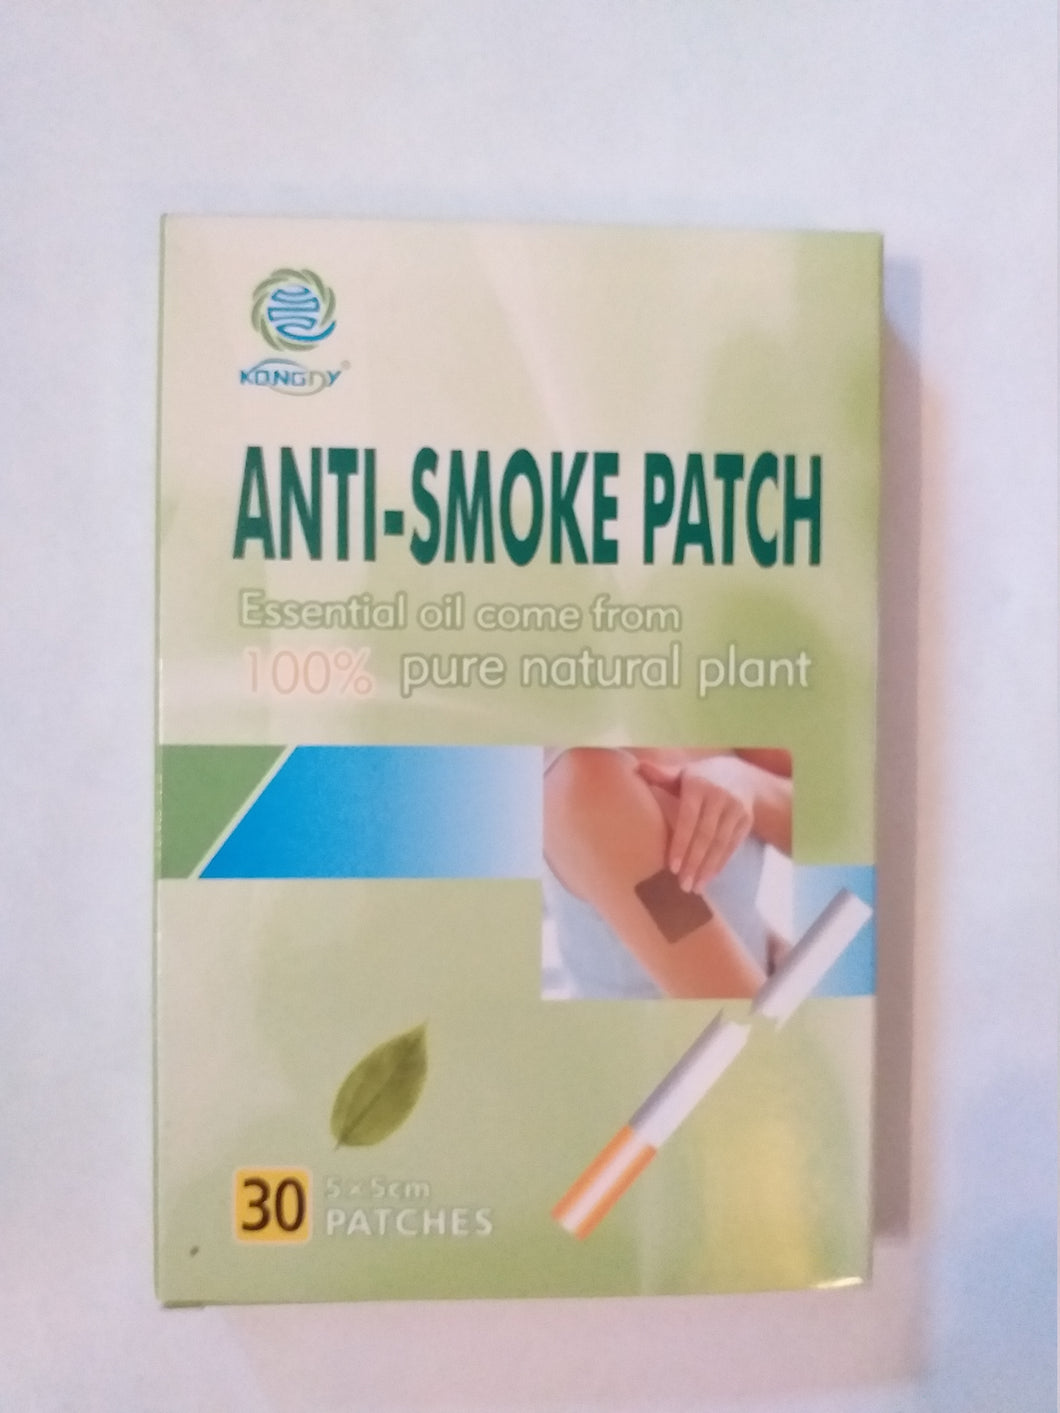 Anti-Smoke patch